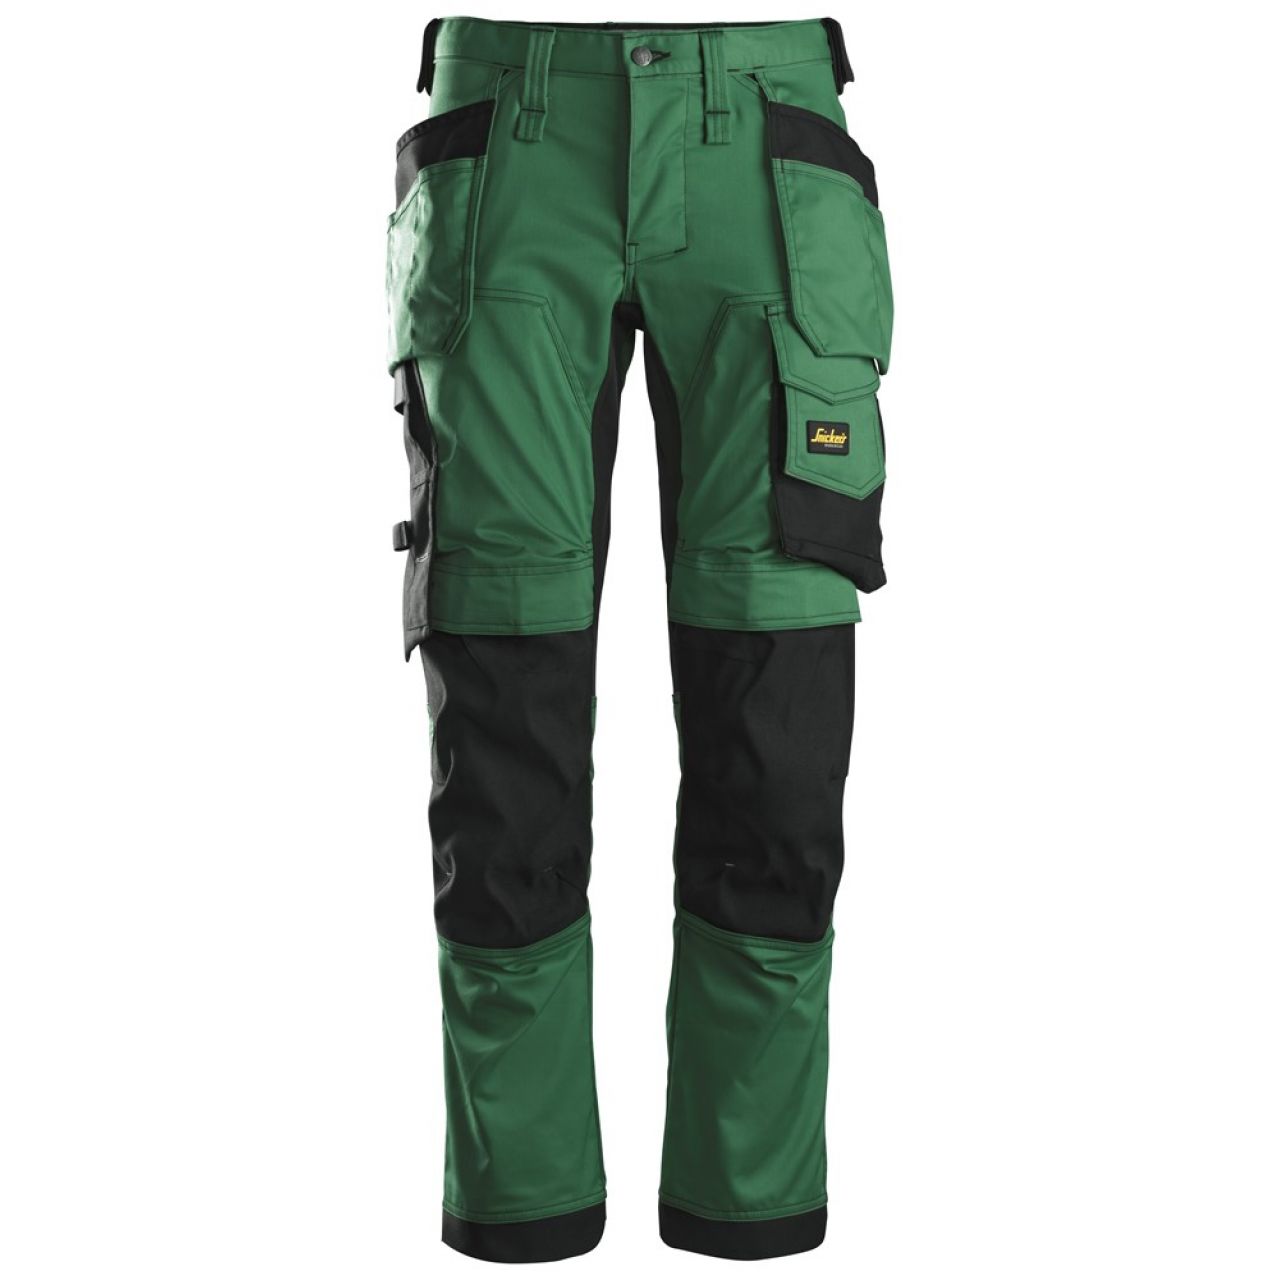 6241 Pantalones largos de trabajo elásticos con bolsillos flotantes AllroundWork verde forestal-negro talla 58